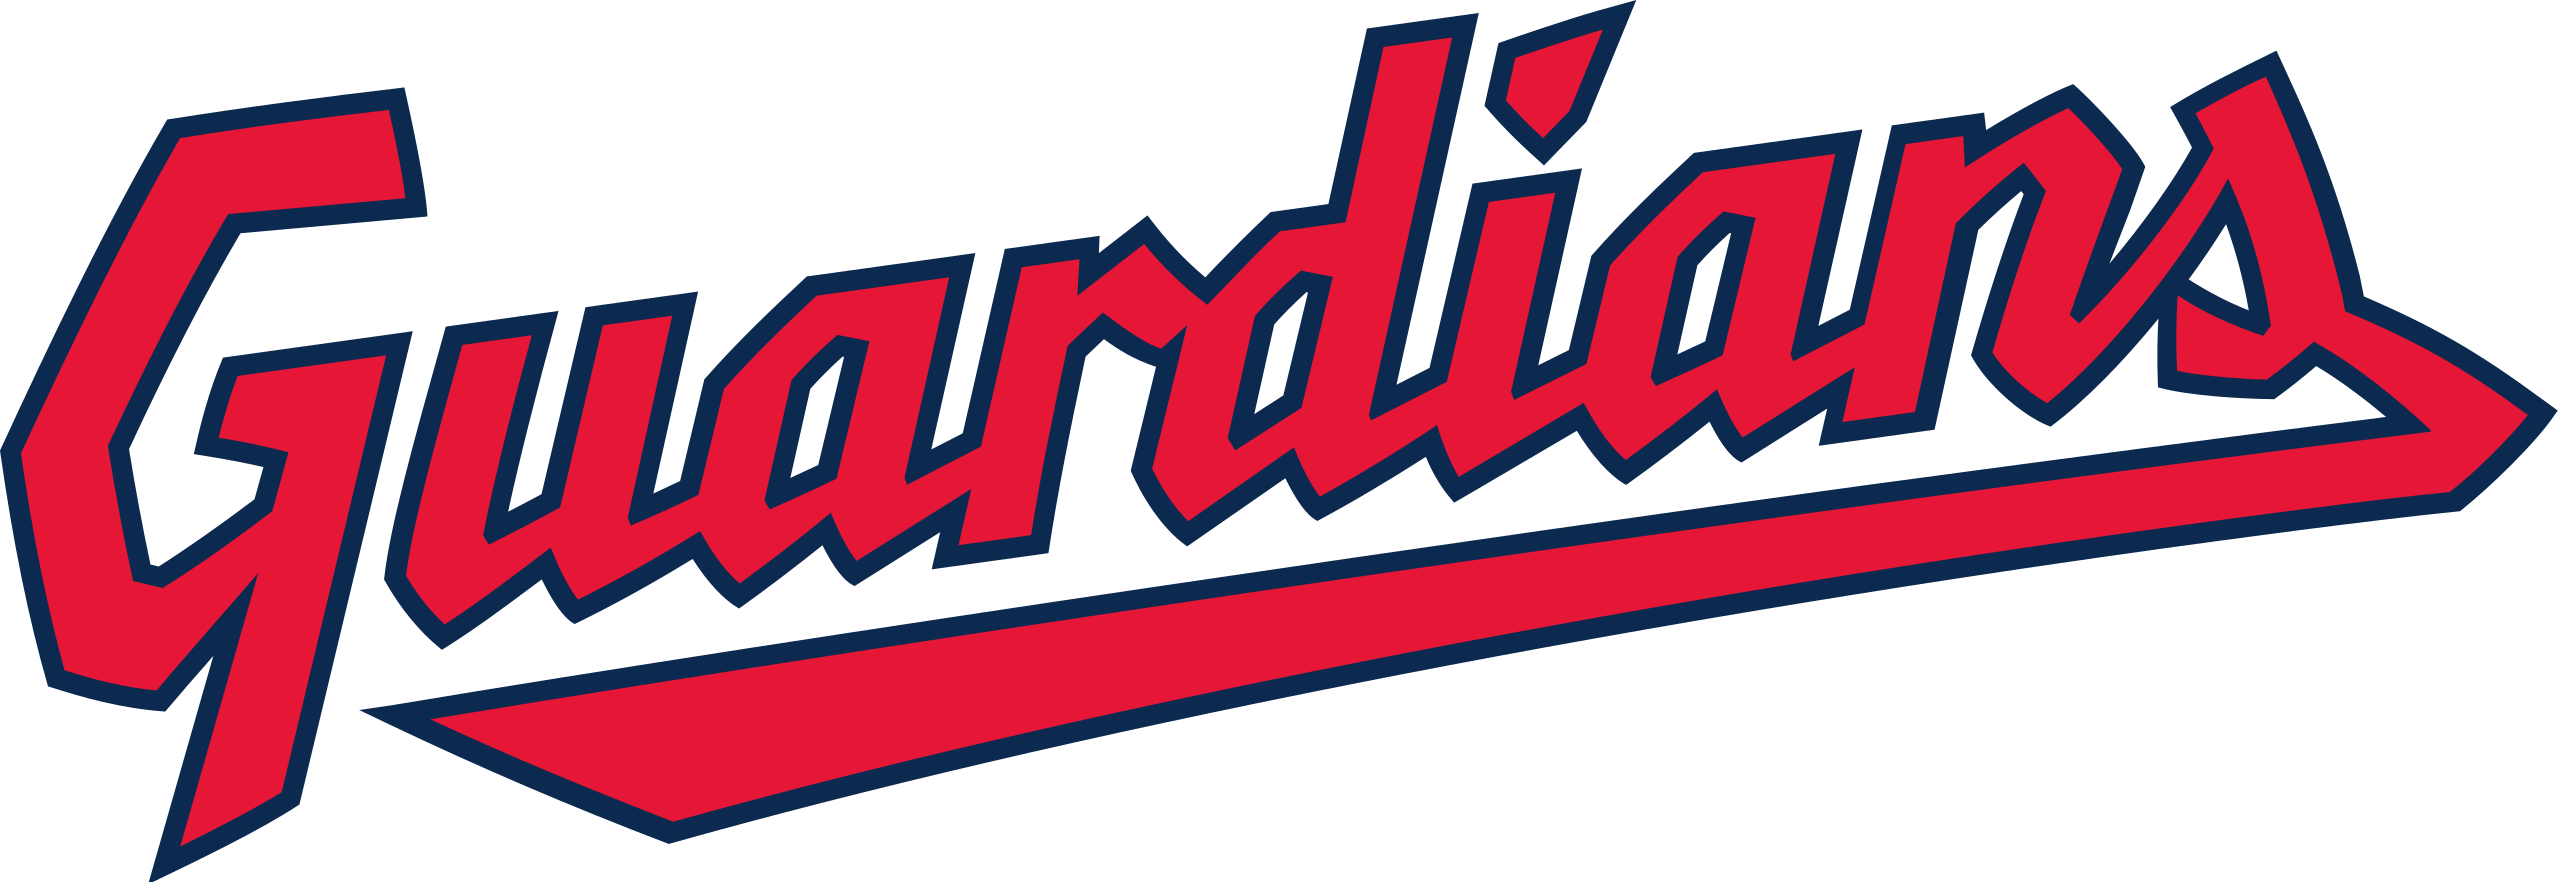 Cleveland Guardians - Wikipedia